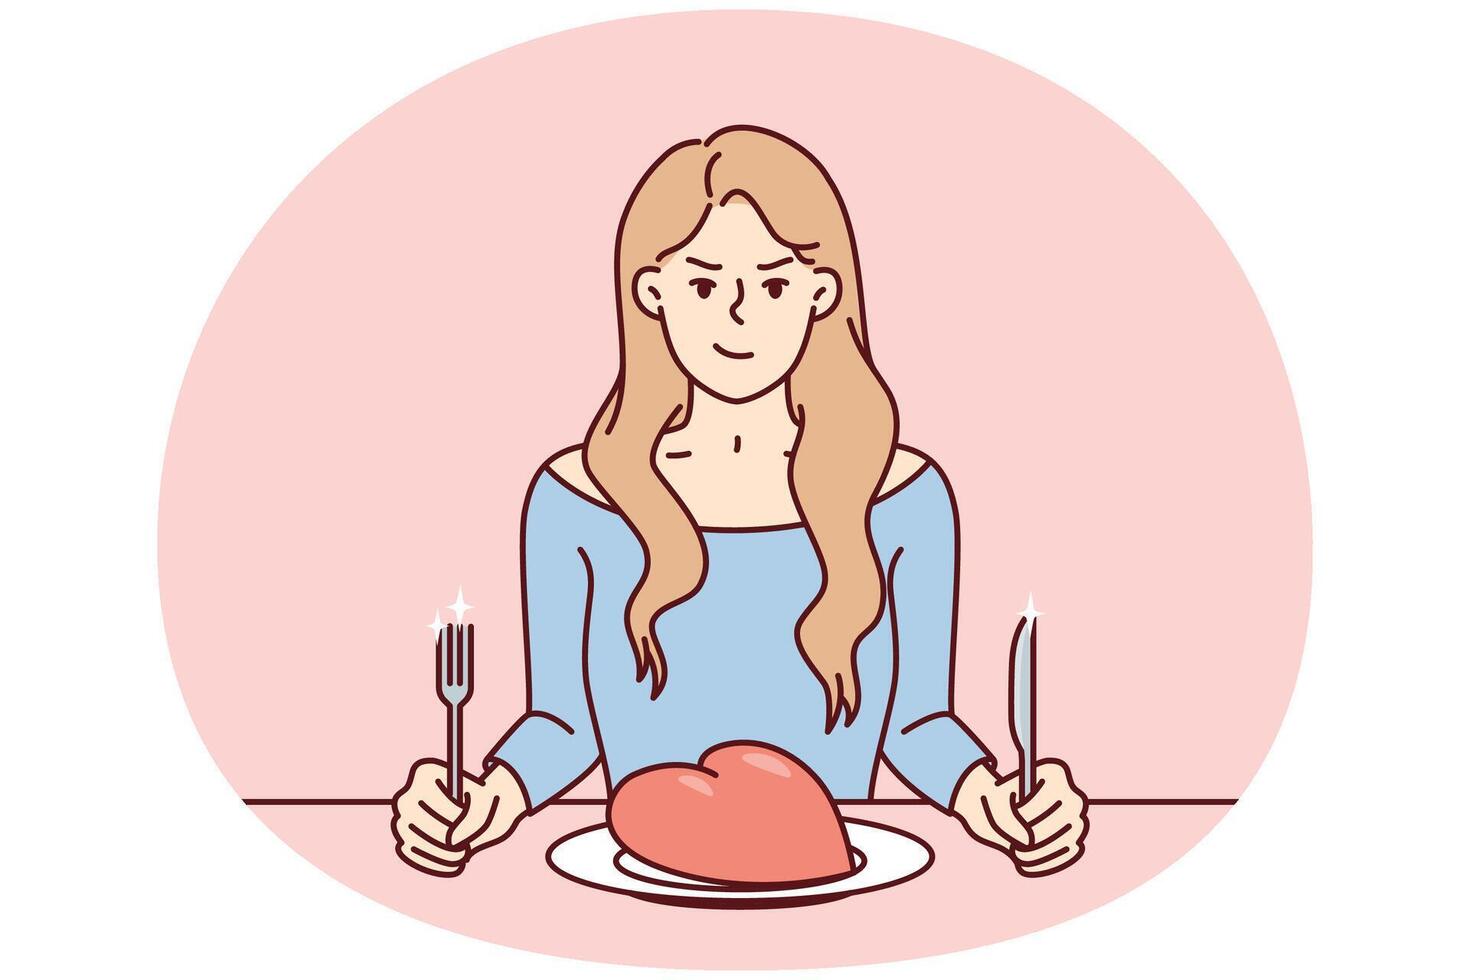 franzindo a testa mulher senta às mesa com gigante coração dentro prato e detém garfo com faca. imagem vetor